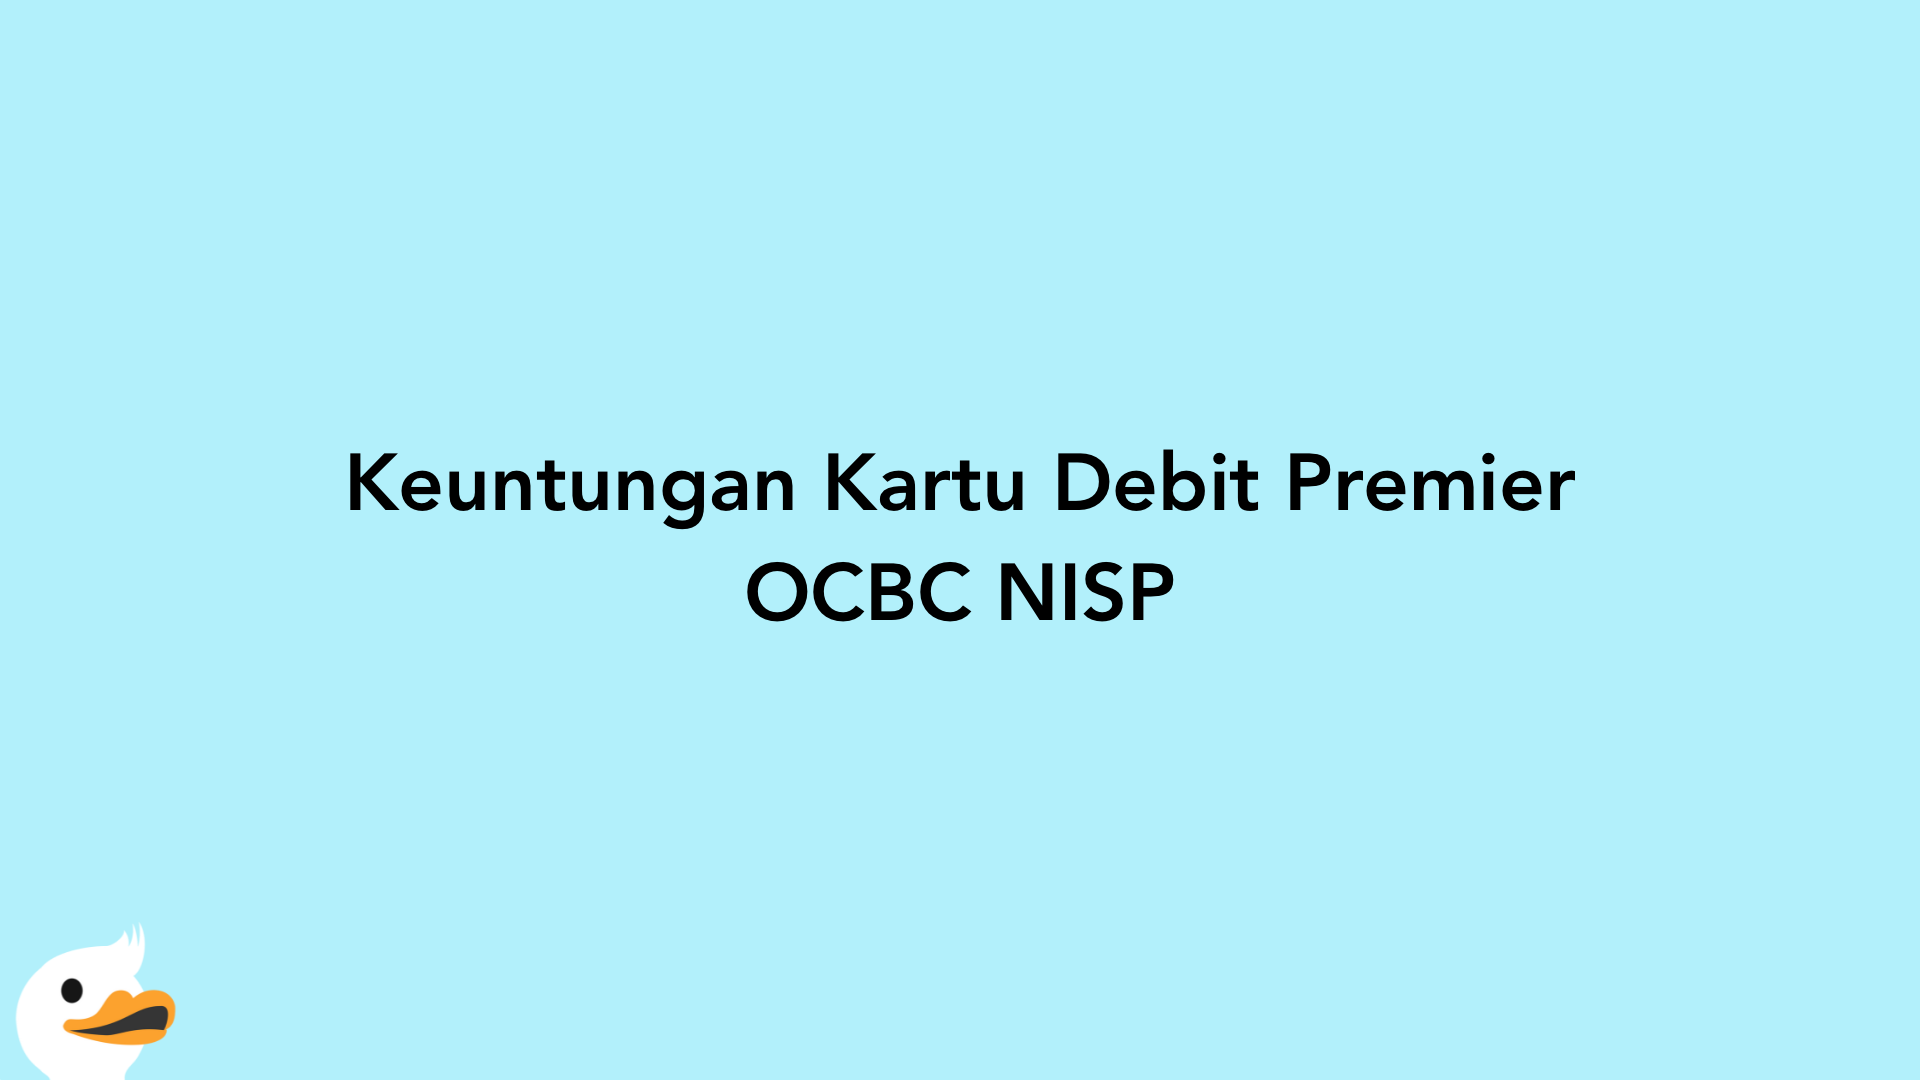 Keuntungan Kartu Debit Premier OCBC NISP